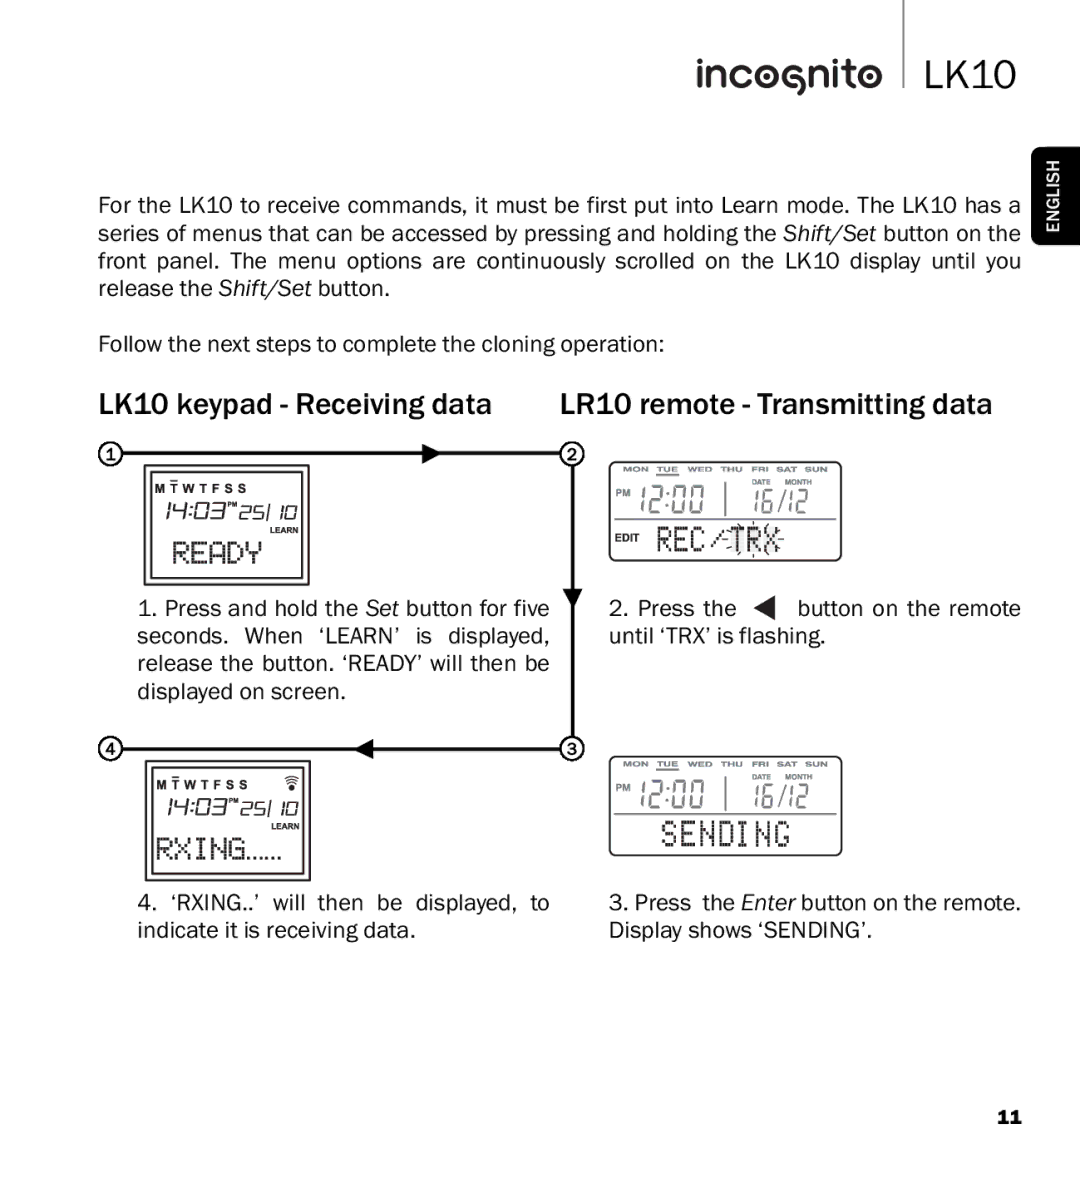 Cambridge Audio manual LK10 keypad Receiving data LR10 remote Transmitting data 